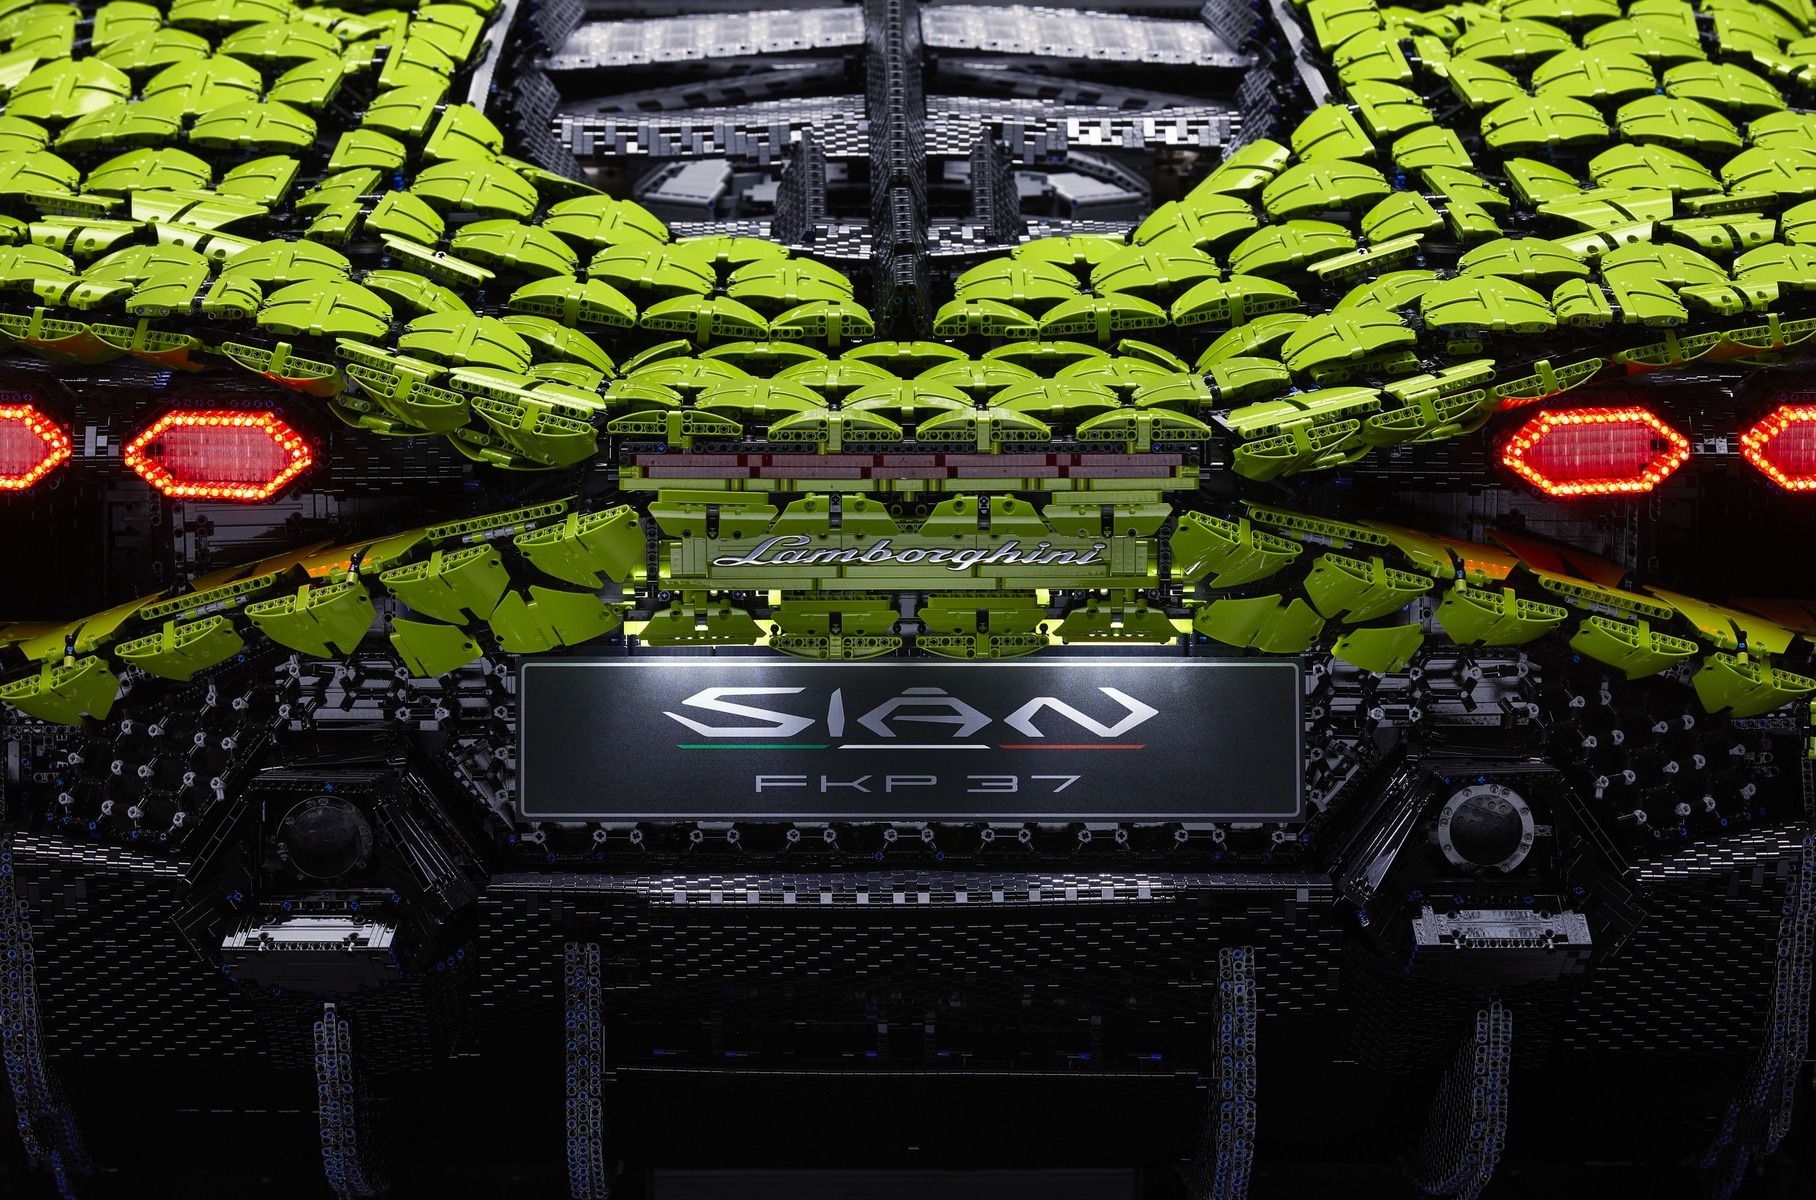 Посмотрите на полноразмерный Lamborghini Sian из 400 тысяч деталей Lego